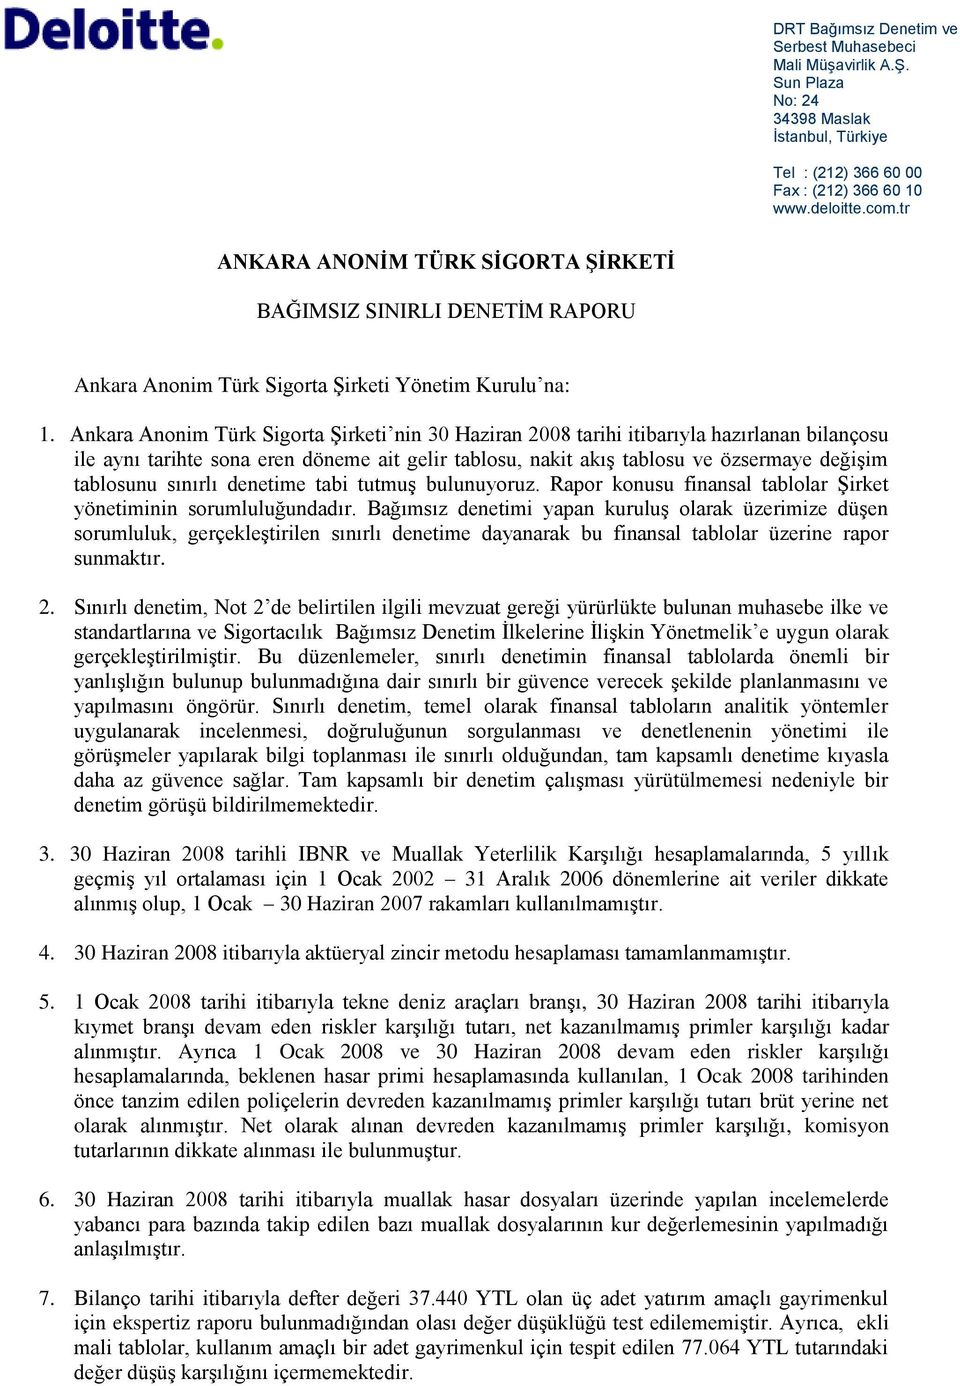 Ankara Anonim Türk Sigorta ġirketi nin 30 Haziran 2008 tarihi itibarıyla hazırlanan bilançosu ile aynı tarihte sona eren döneme ait gelir tablosu, nakit akıģ tablosu ve özsermaye değiģim tablosunu